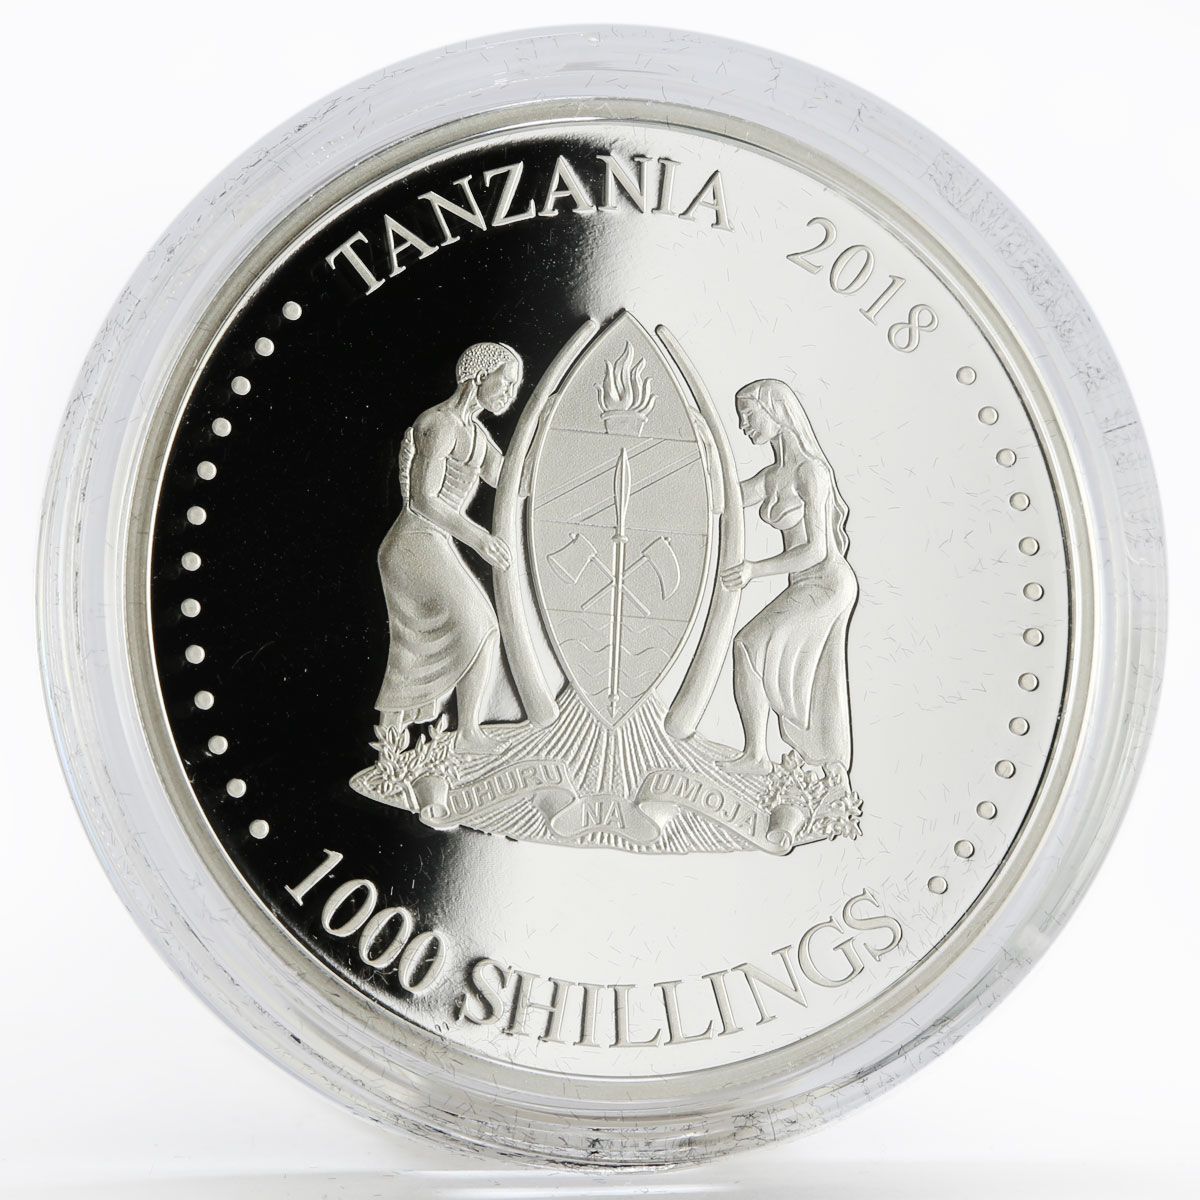 Tanzania 1000 shilings set of 2 coins Kalashnikov AK-47 colored silver coin 2018